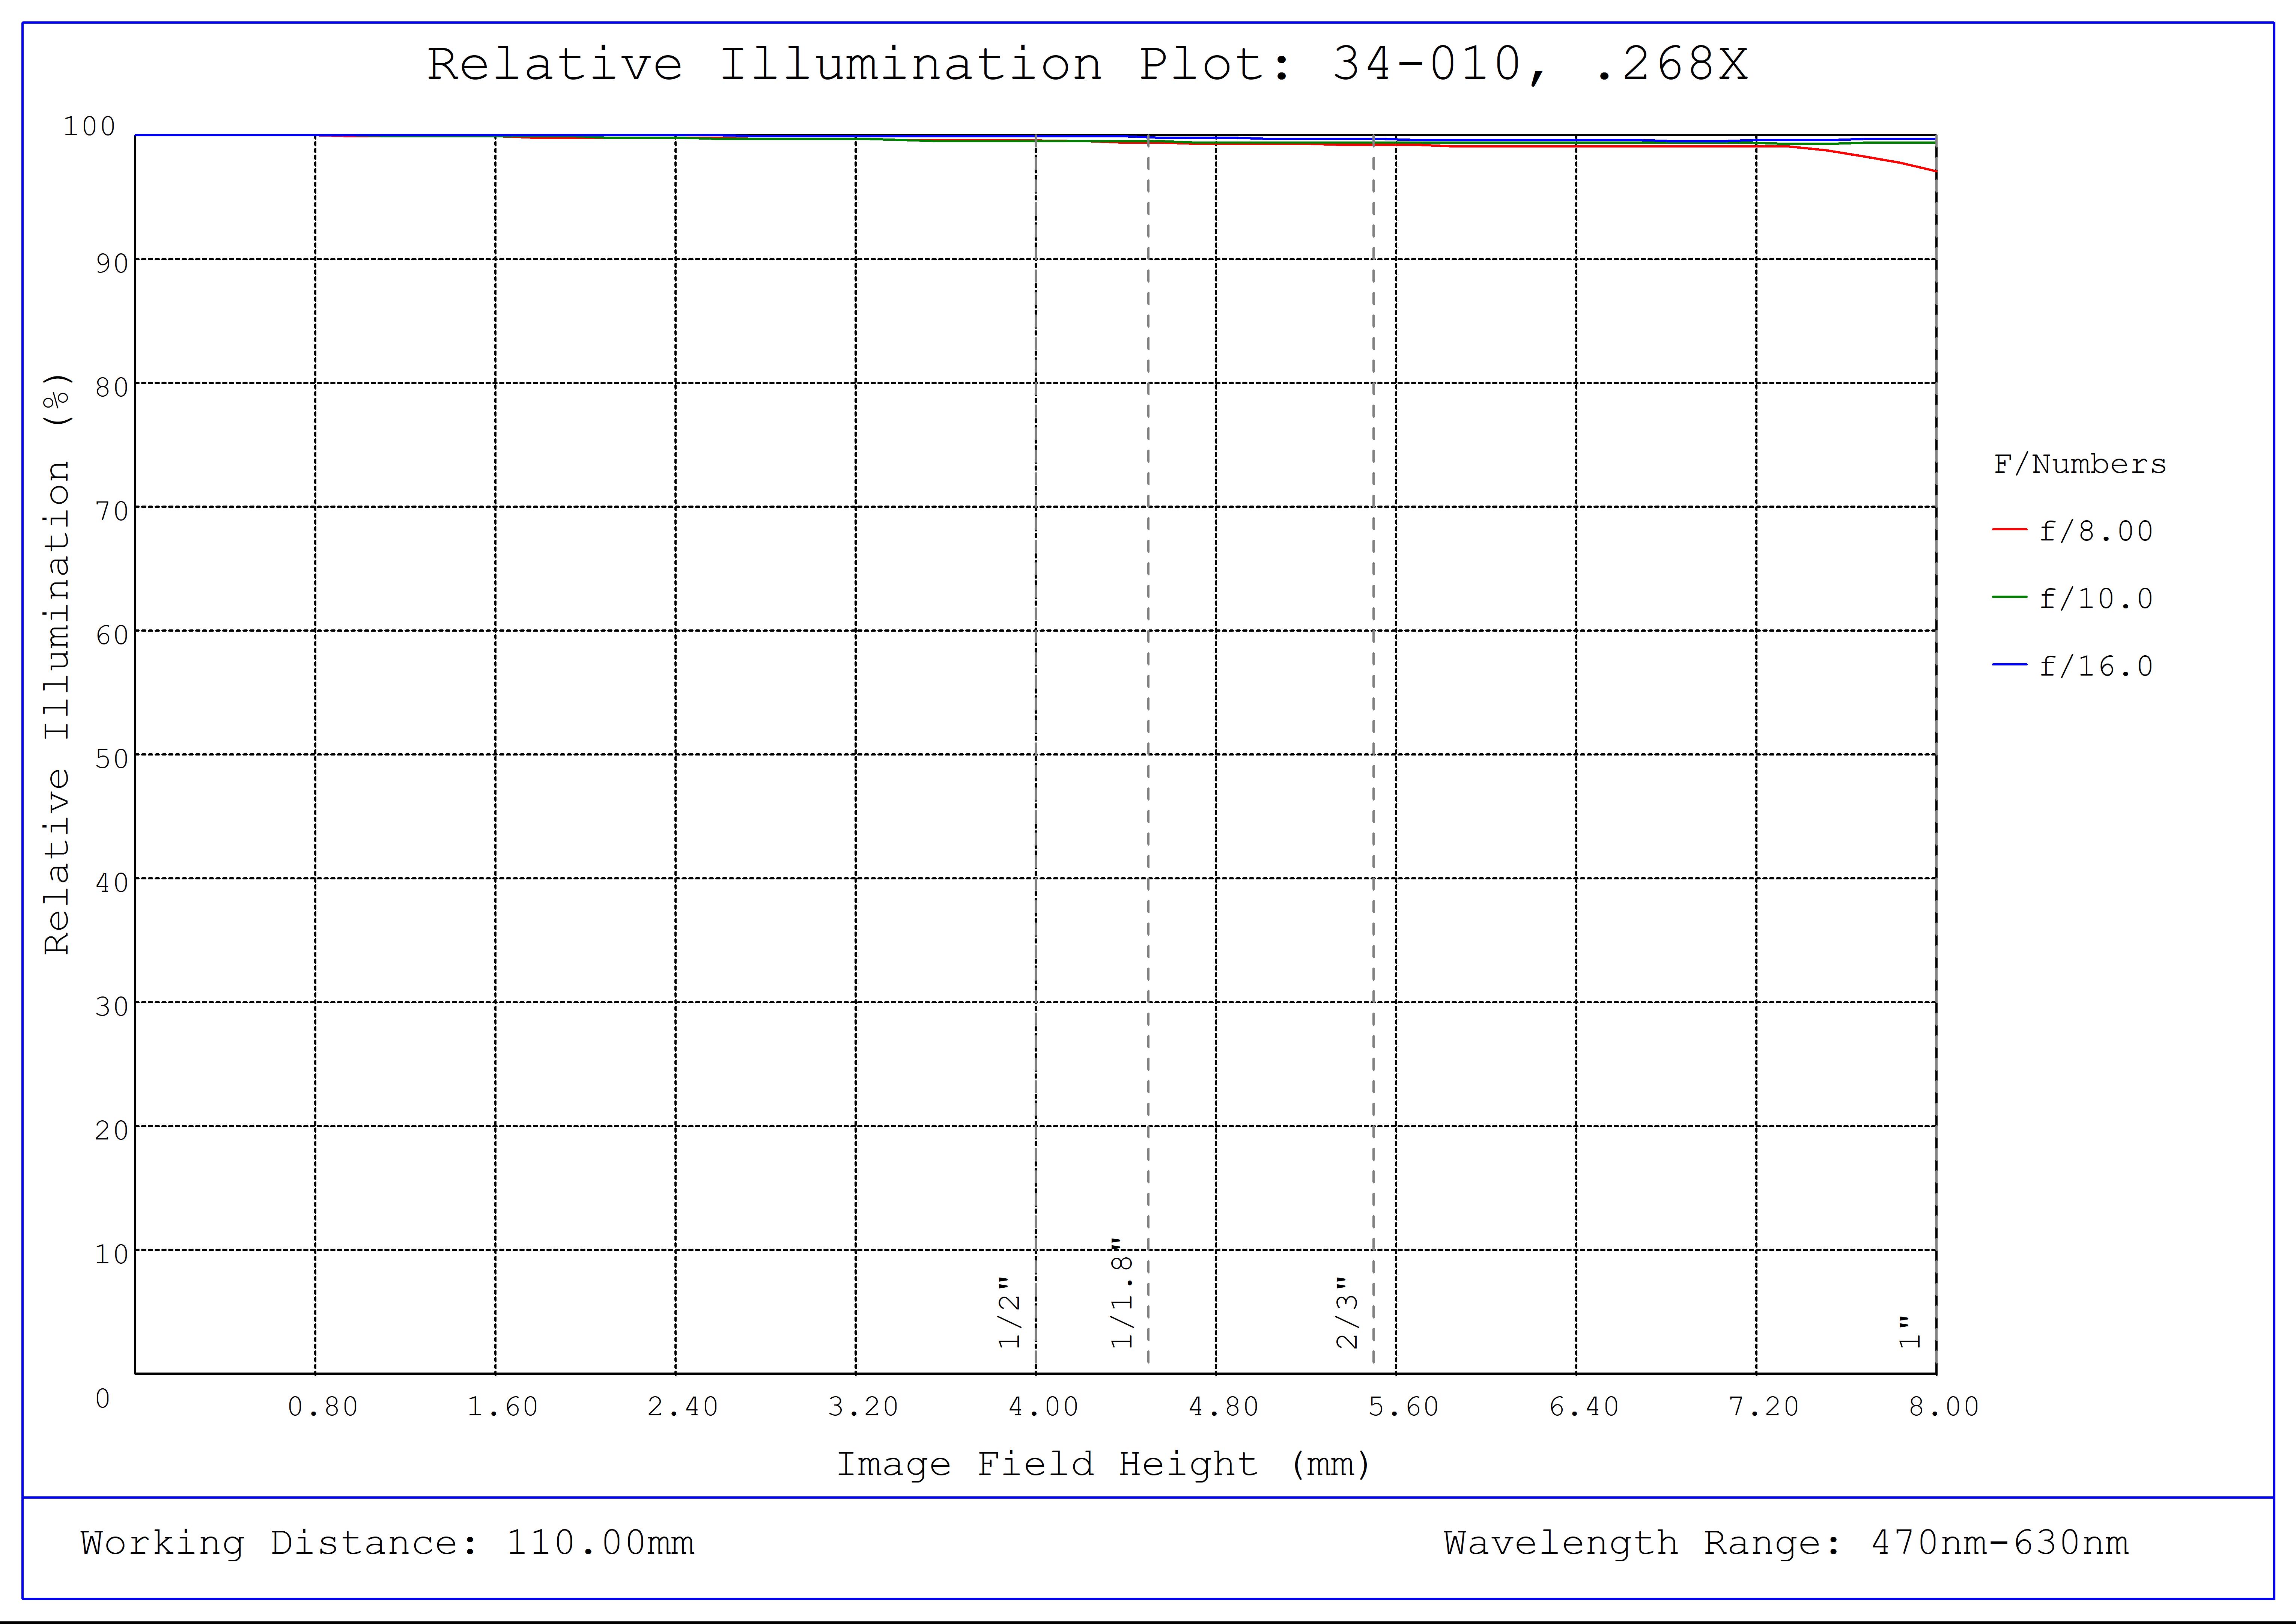 #34-010, 0.268X, 1" C-Mount TitanTL® Telecentric Lens, Relative Illumination Plot